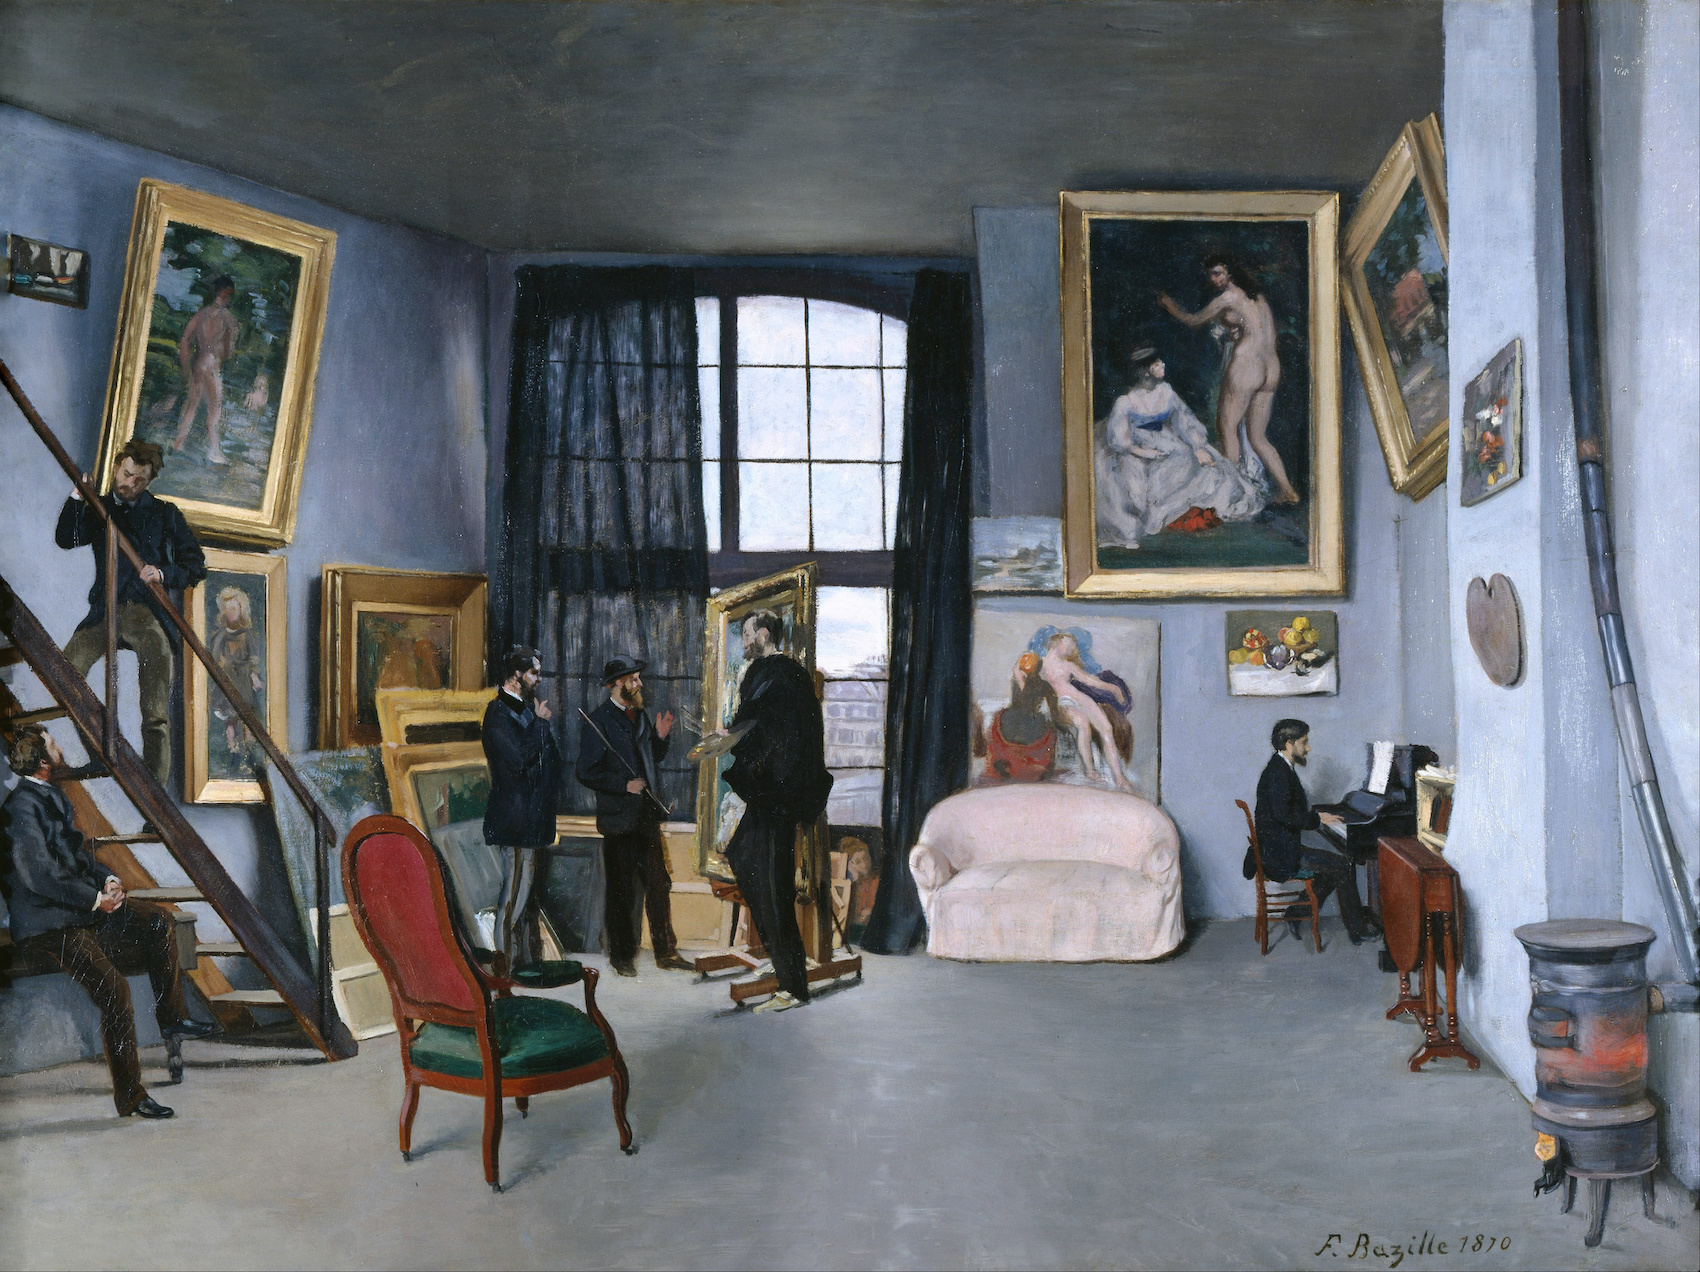 L'atelier de Bazille / Jean Frédéric Bazille, 1870.